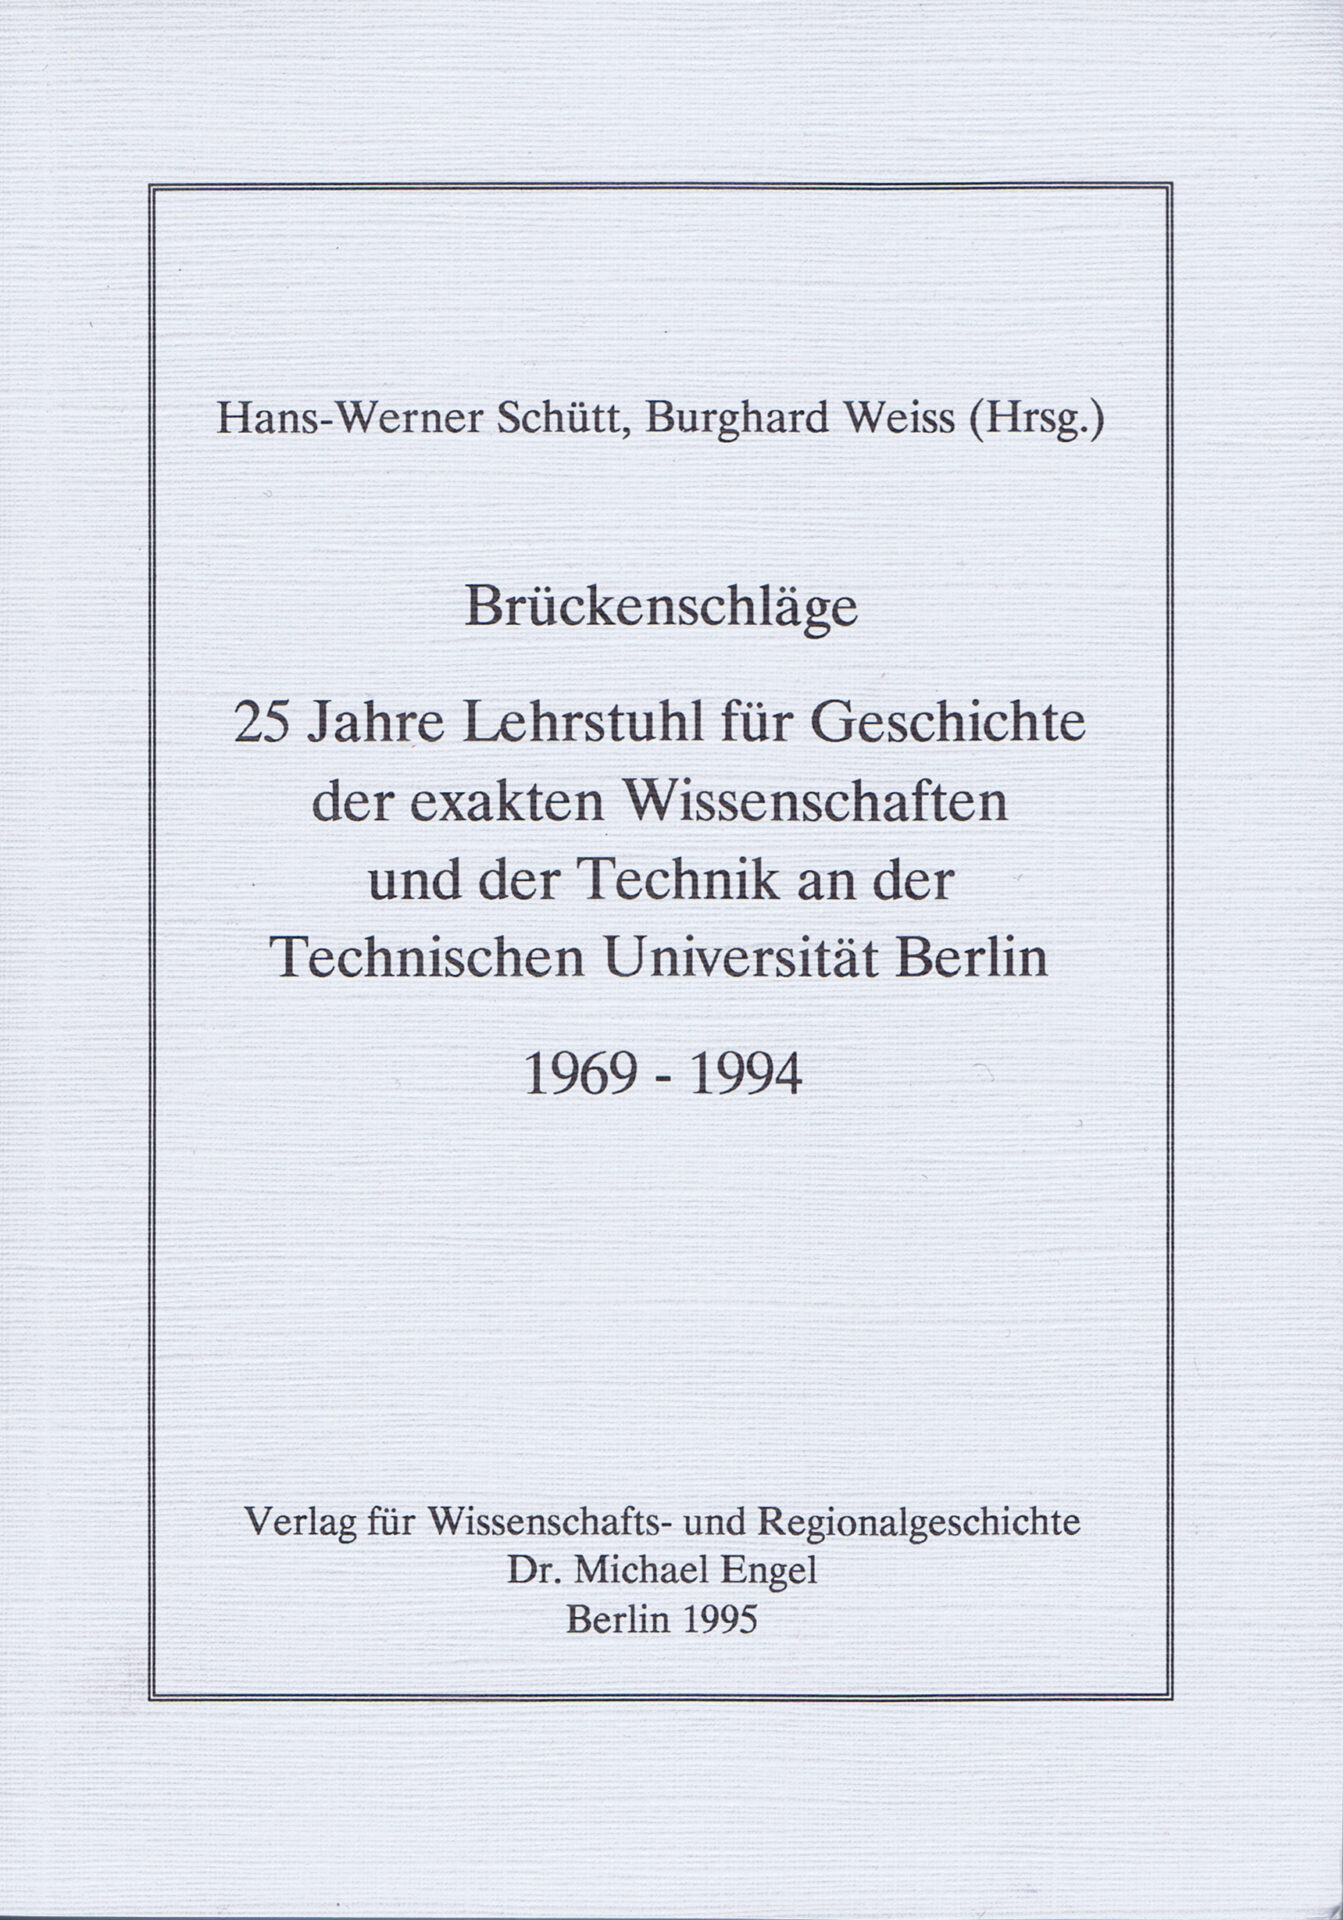 Brückenschläge 25 Jahre Lehrstuhl für Geschichte der exakten Wissenschaften und der Technik an der Technischen Universität Berlin 1969 -1994